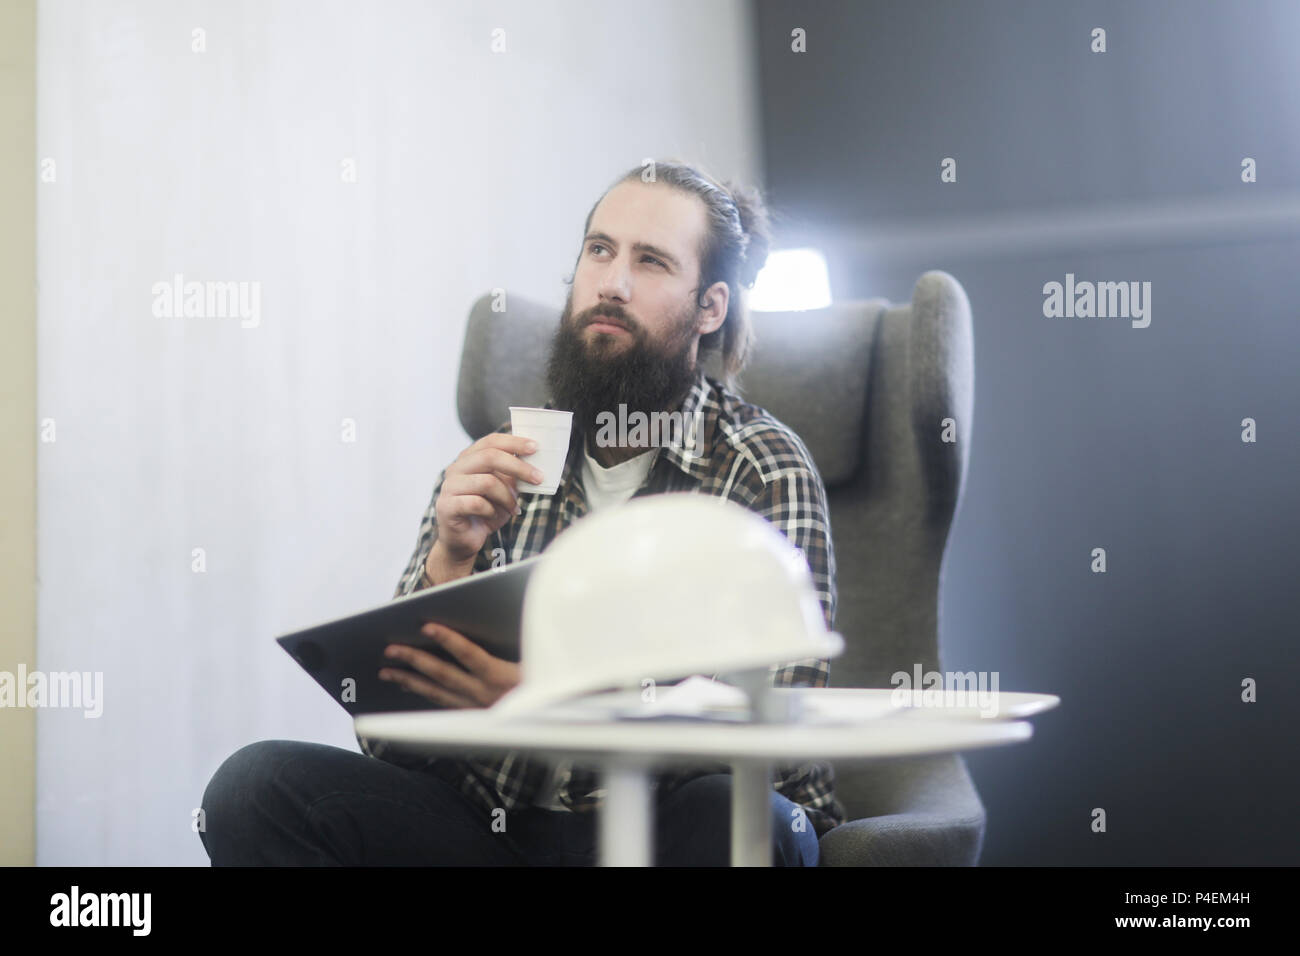 Homme assis dans un fauteuil à l'aide d'une tablette numérique avec un casque de sécurité sur la table Banque D'Images